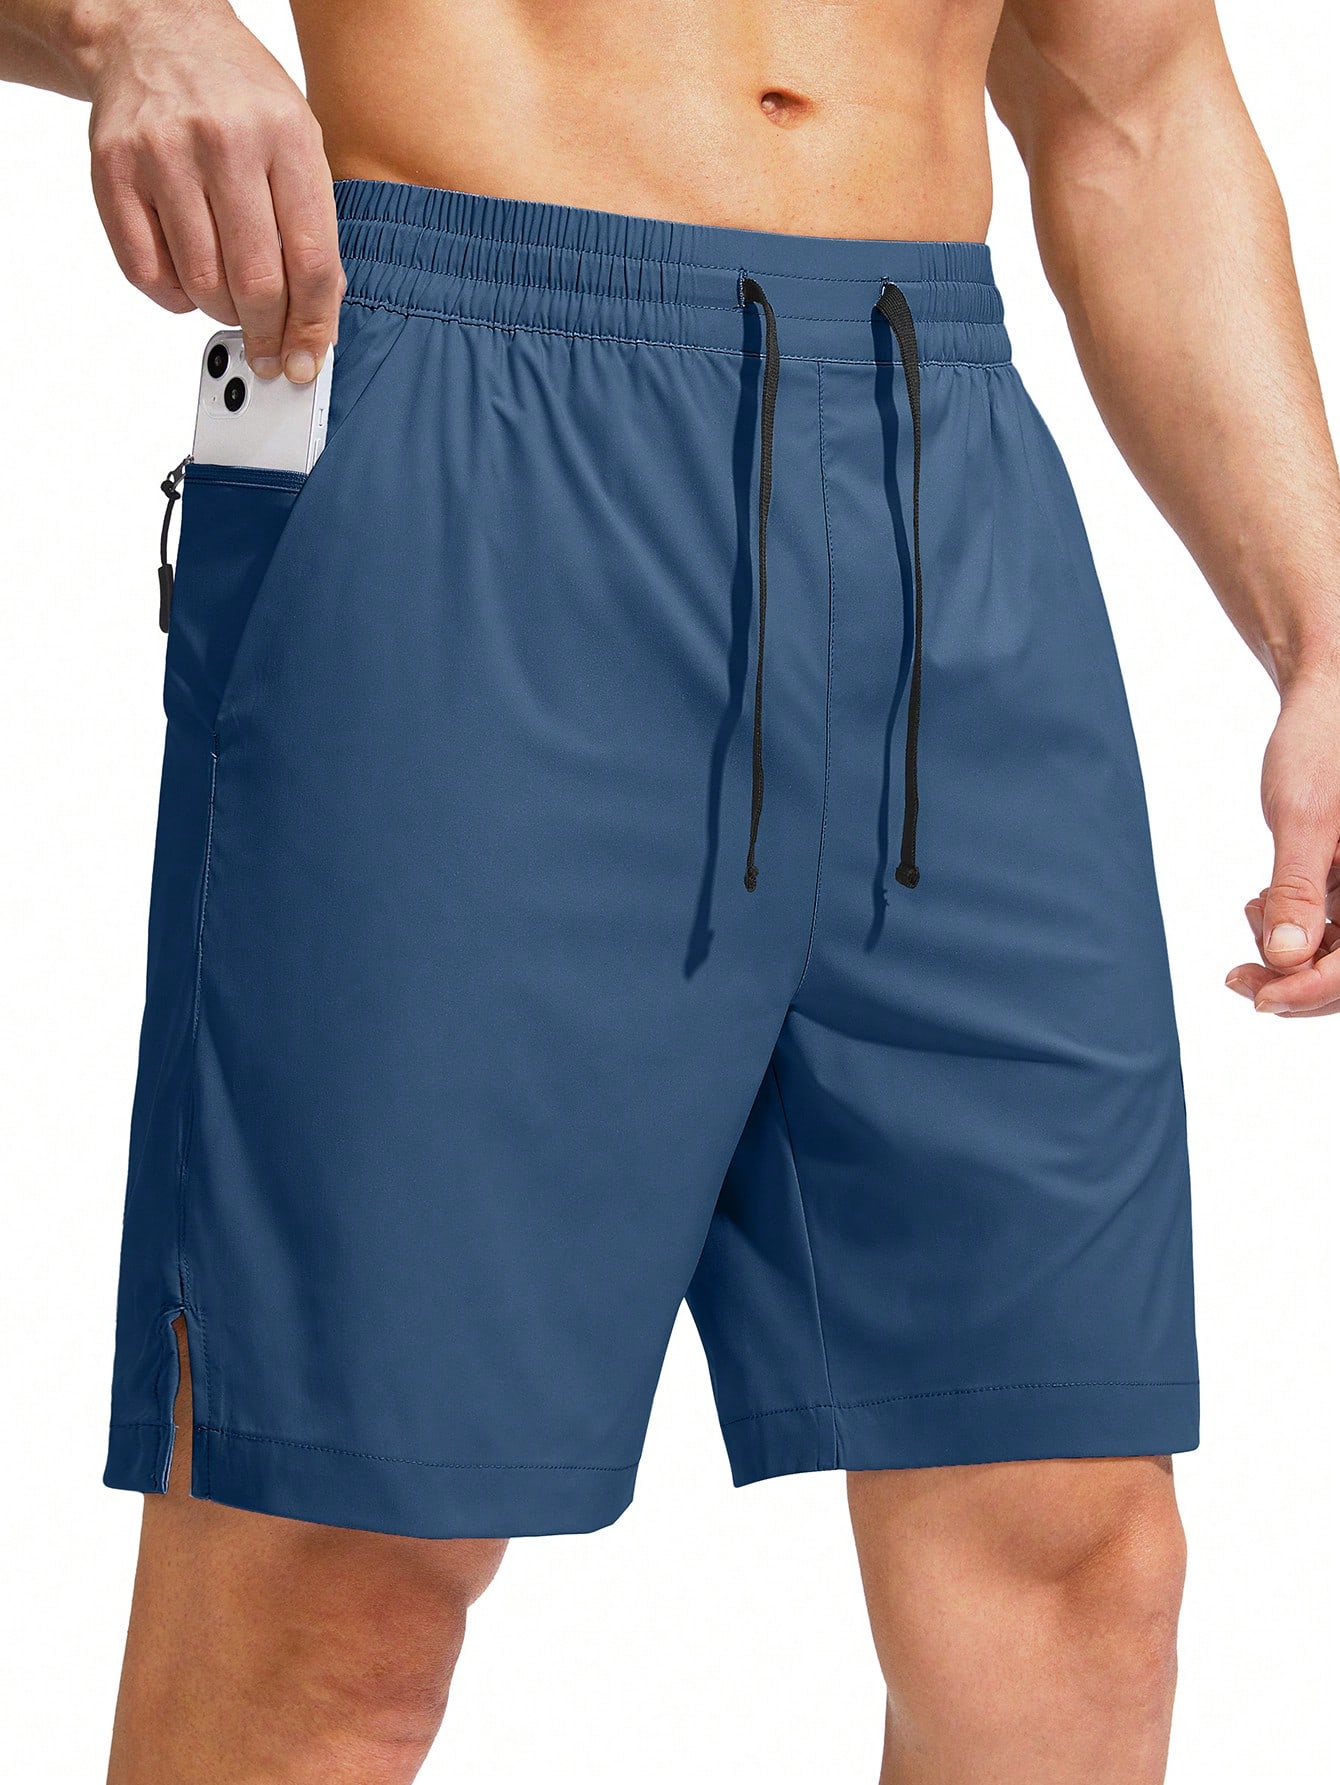 цена G Gradual G Gradual Мужские плавки Быстросохнущий купальный костюм Пляжные шорты для мужчин с карманами на молнии и сетчатой ​​подкладкой Серые шорты, бирюзовый синий